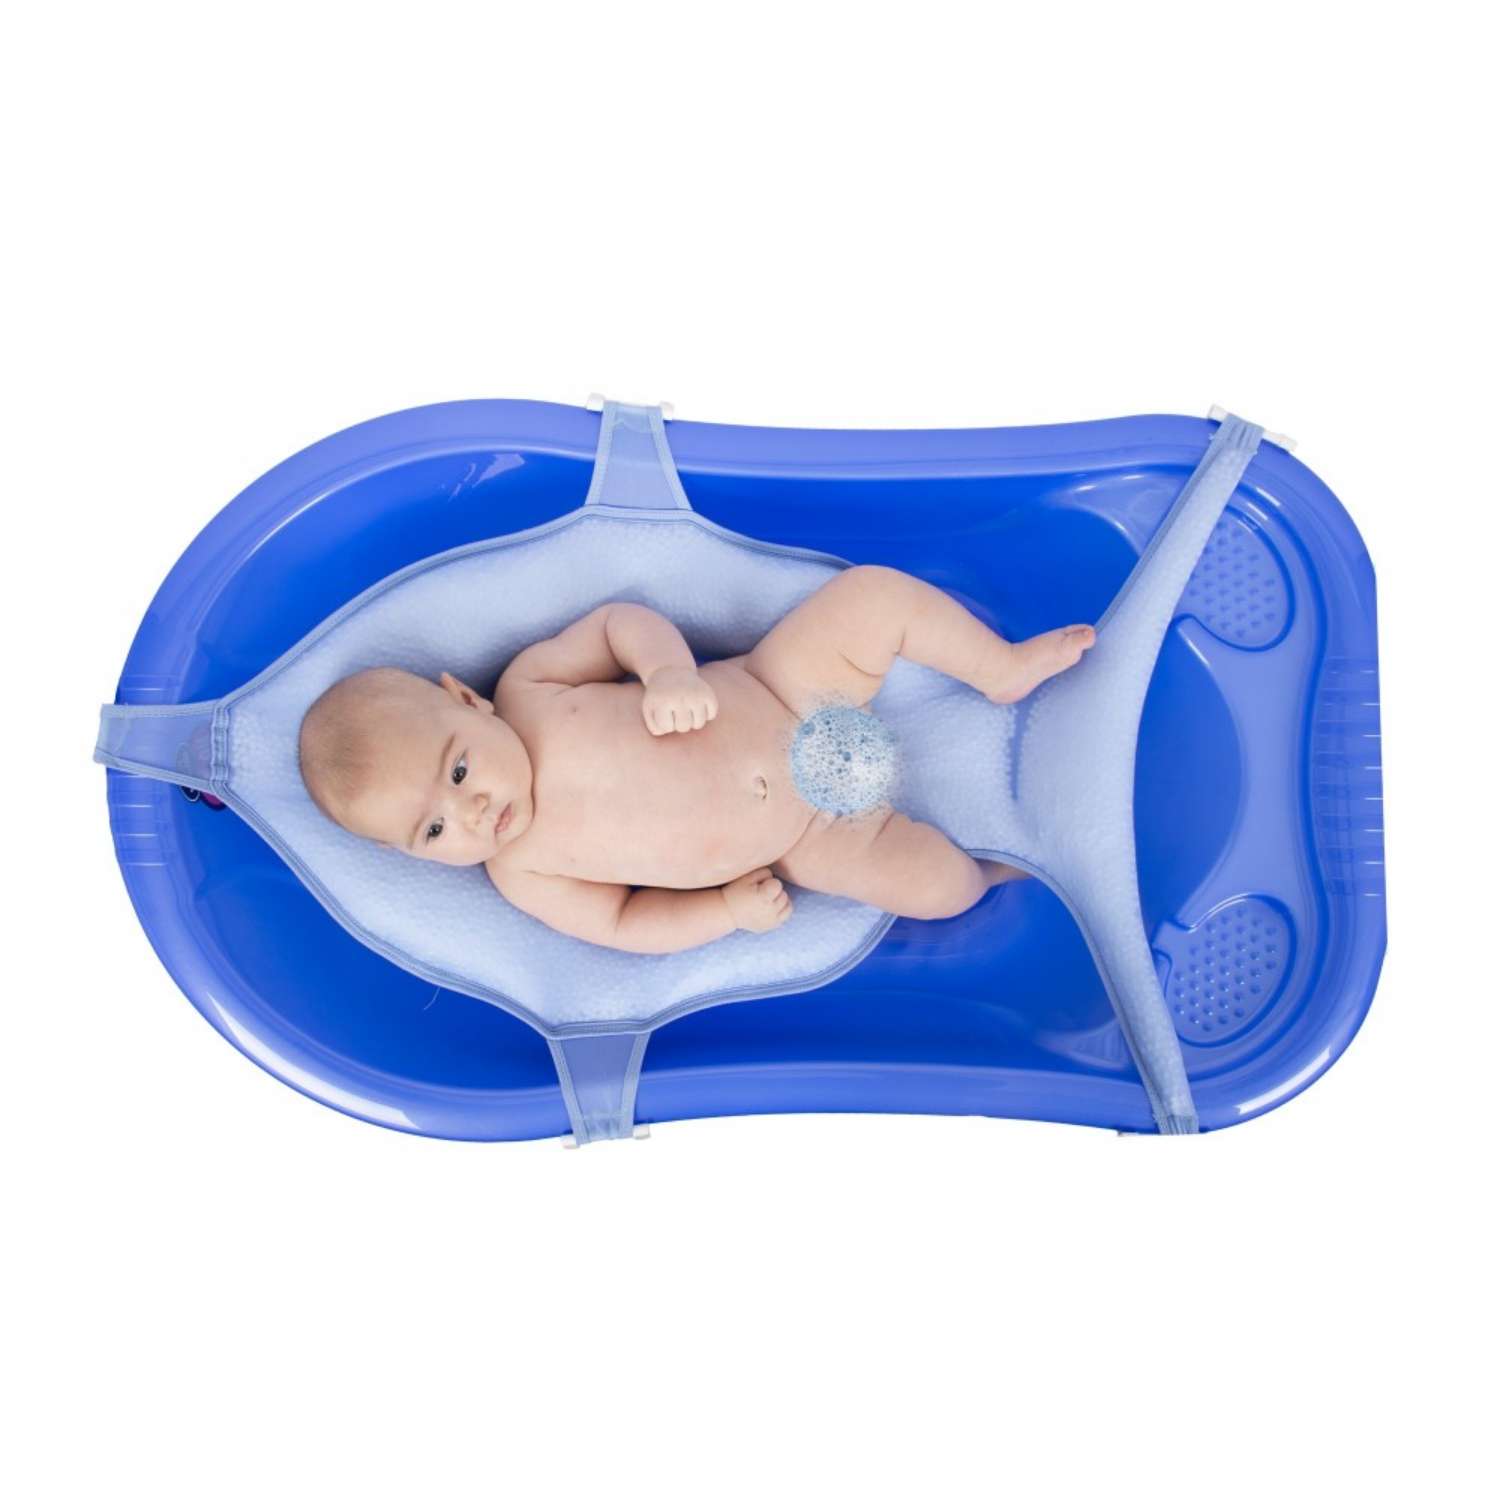 Гамак SEVIBEBE для купания малыша многофункциональный цвет-голубой - фото 2